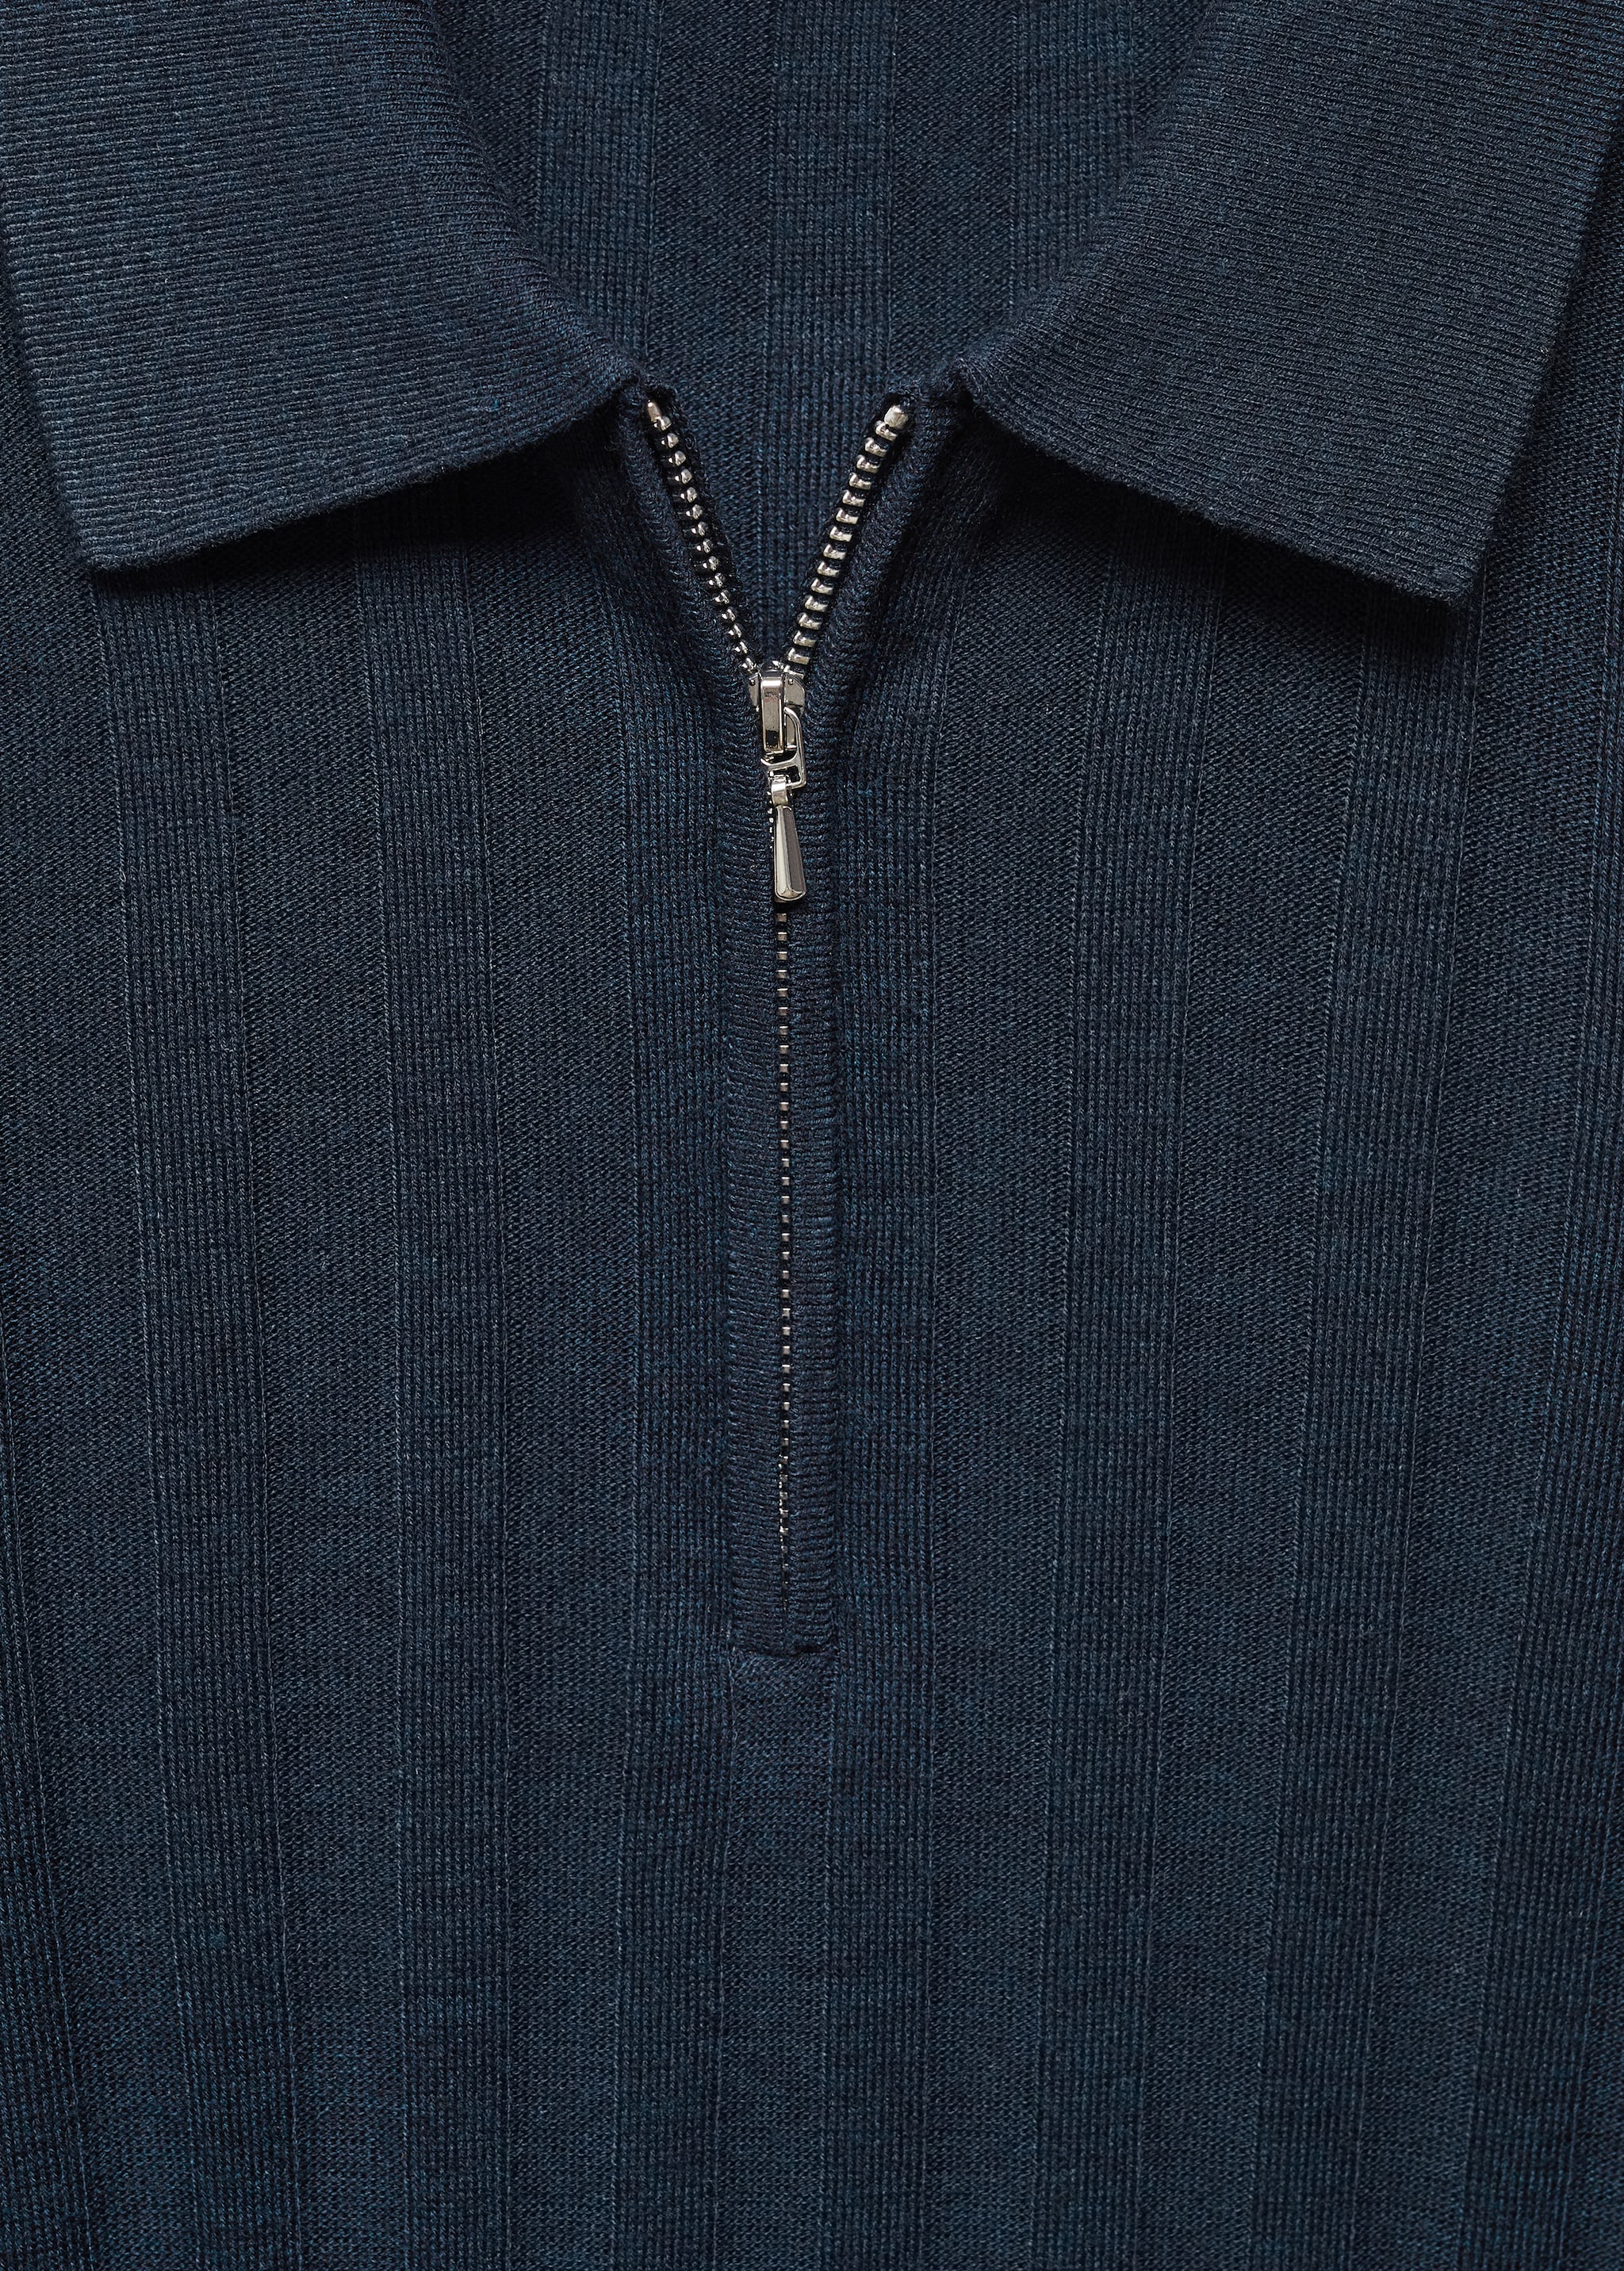 Pullover mit Zip-Kragen - Detail des Artikels 8